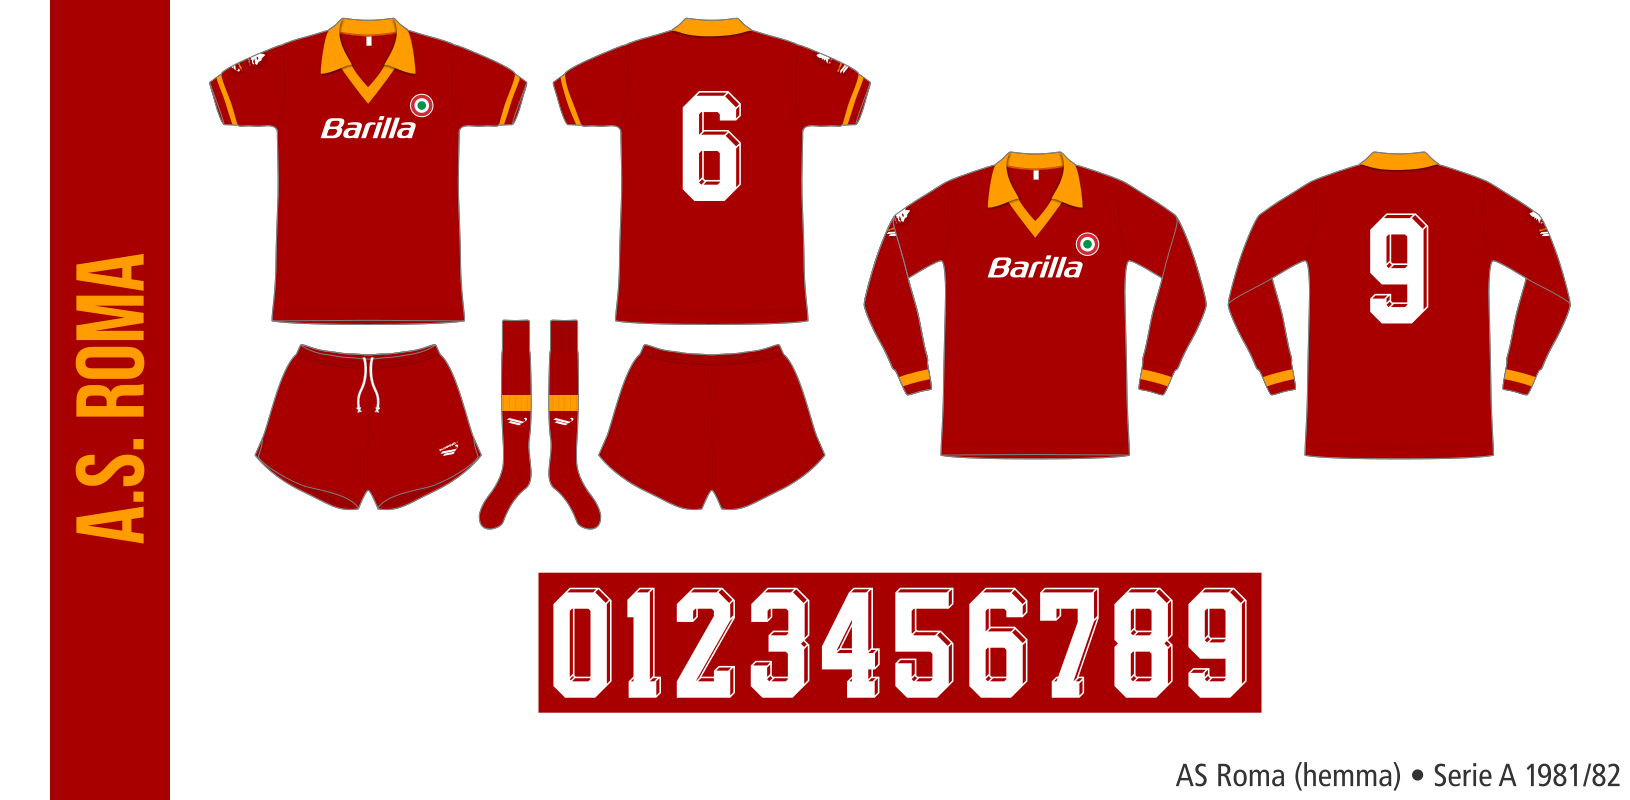 AS Roma 1981/82 (hemma)